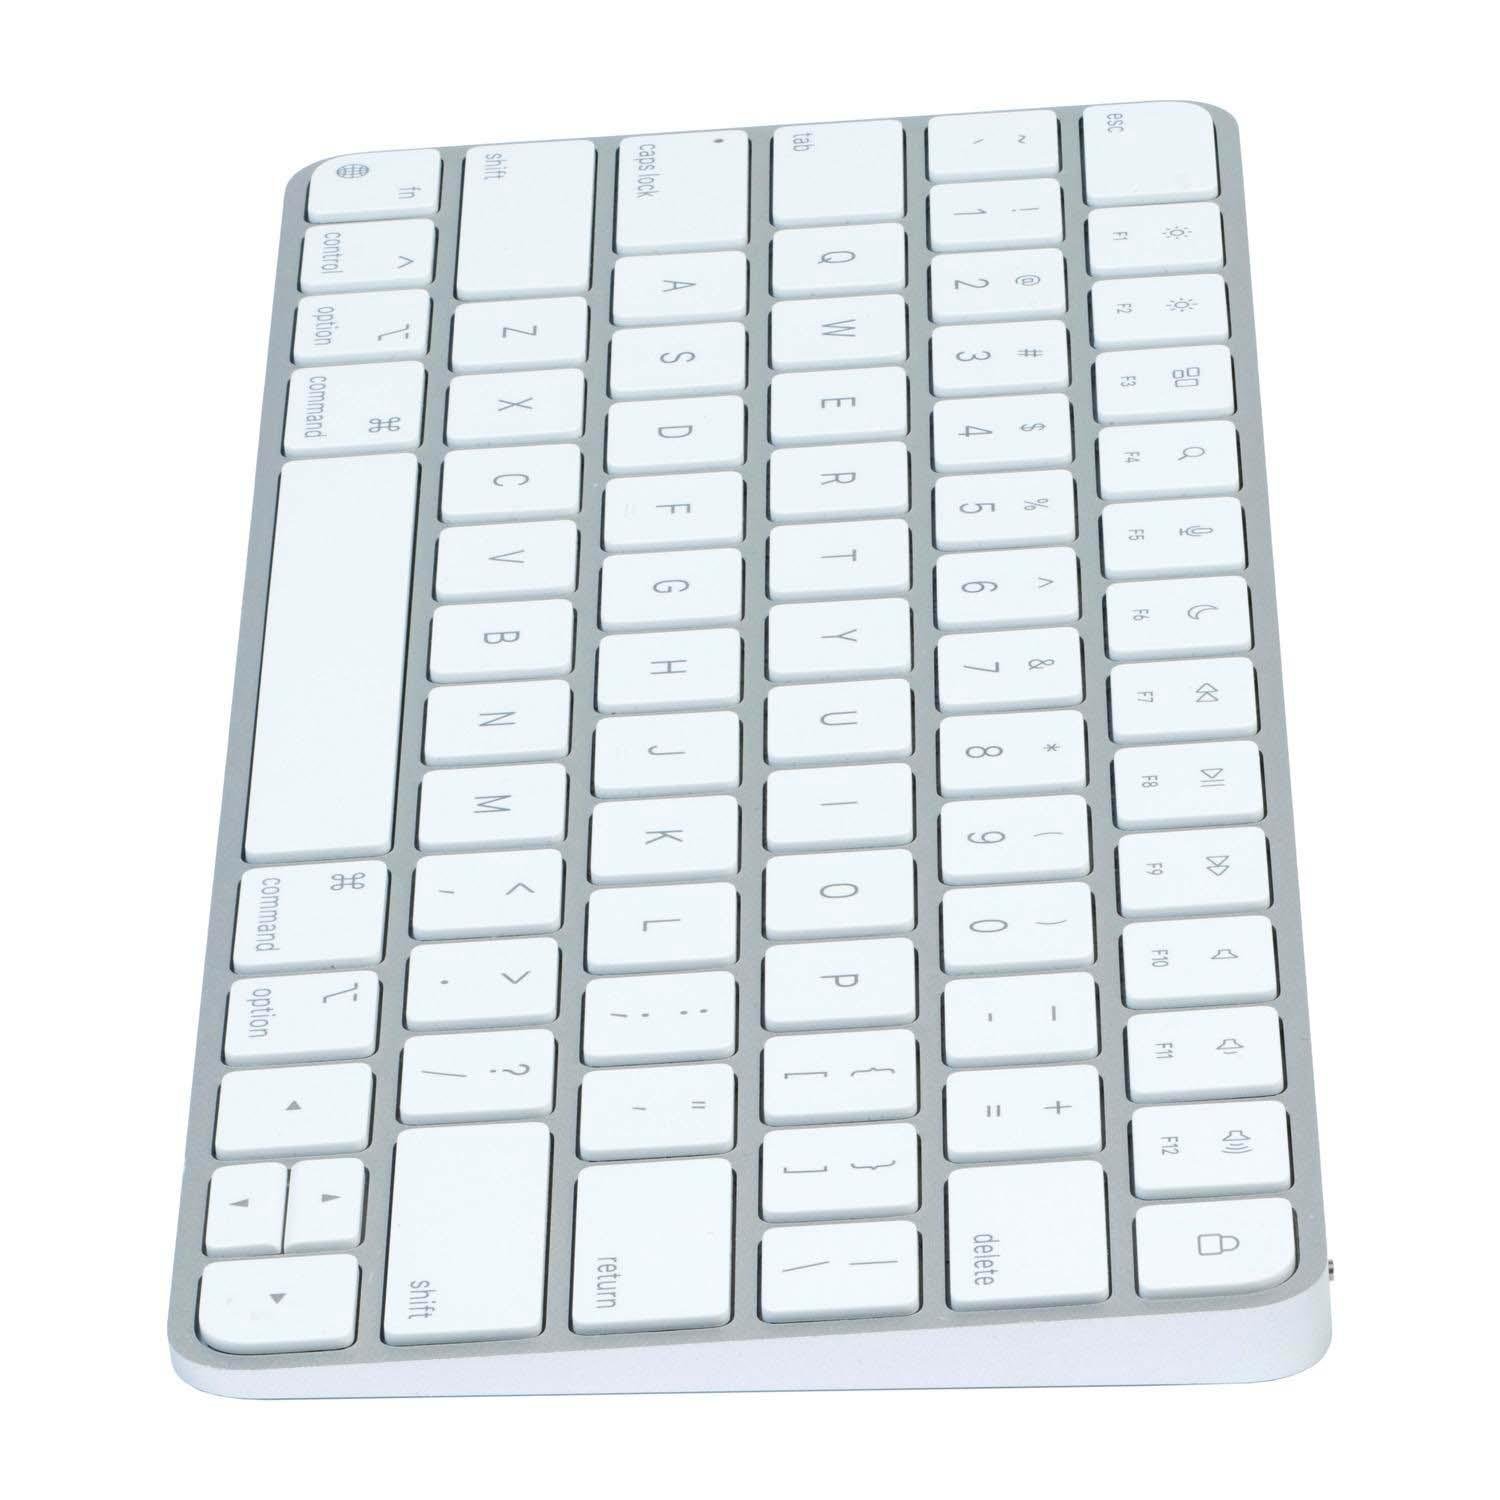 Apple MK2A3LL/A (A2450) Magic Keyboard with at MacSales.com